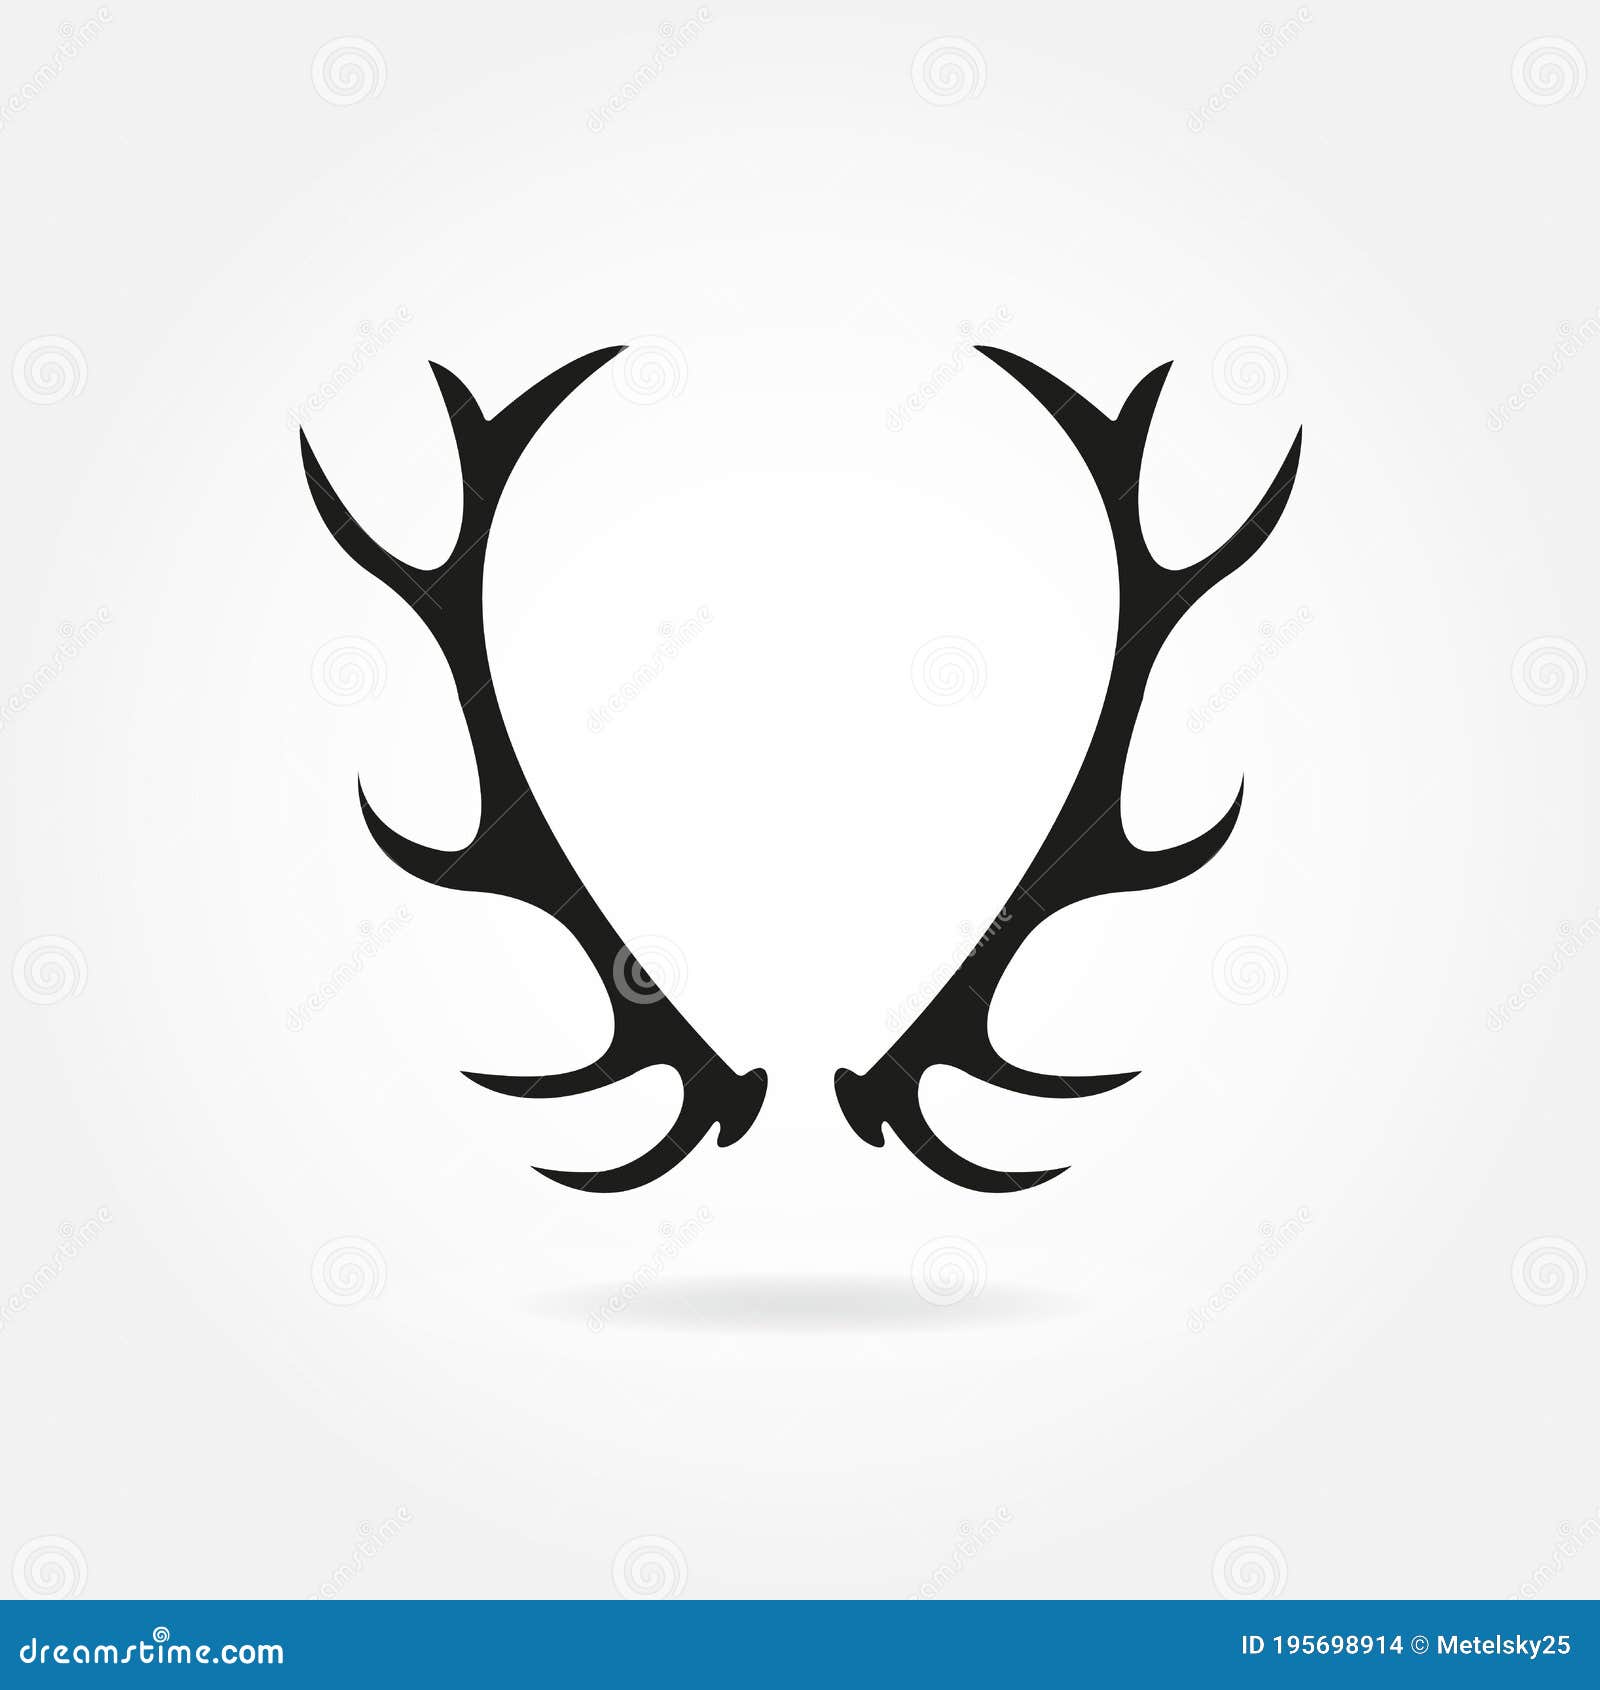 deer antlers. horns icon. black silhouette of antlers in retro style.  